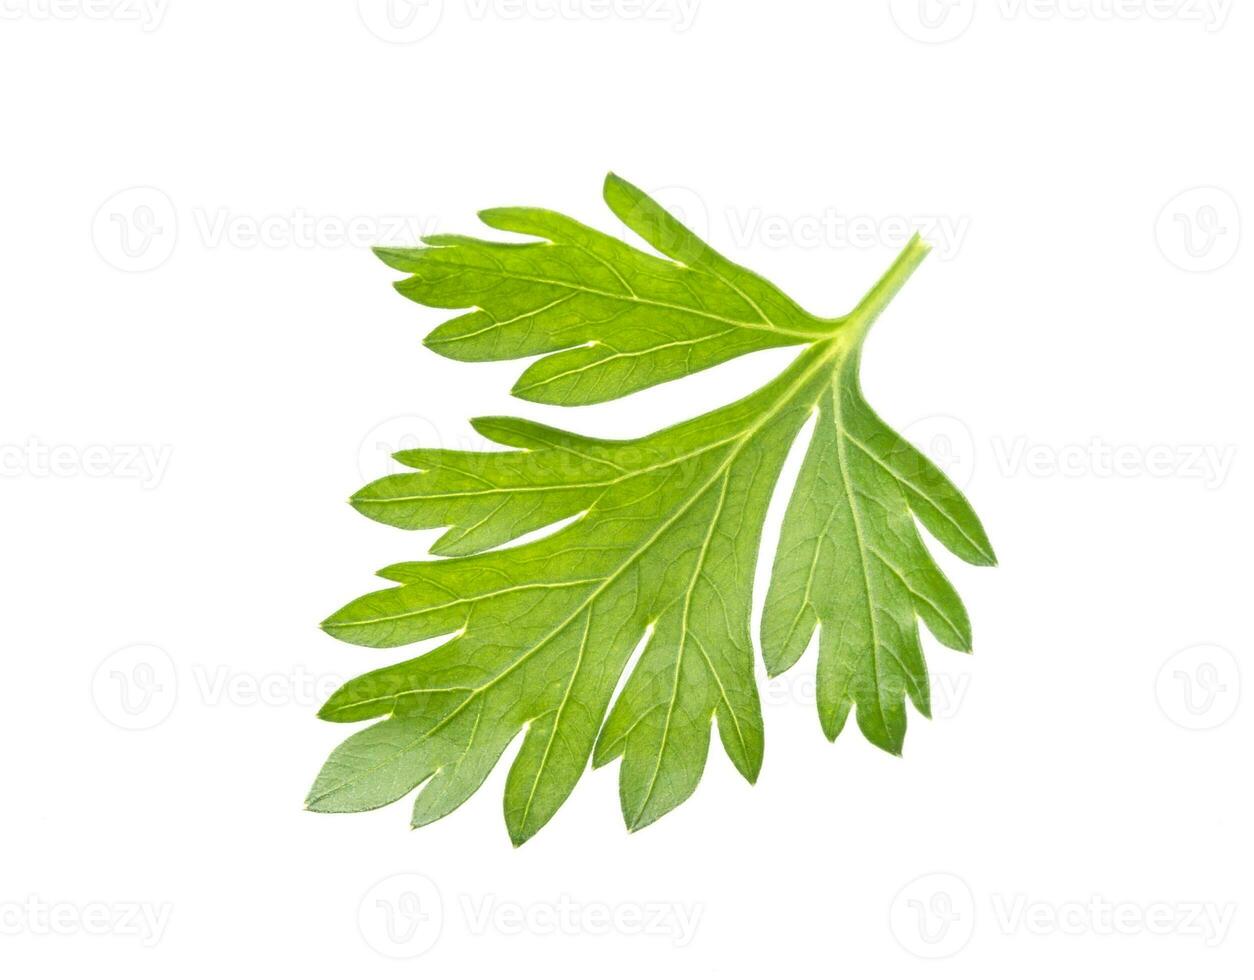 Parsley leaf isolated on white background photo